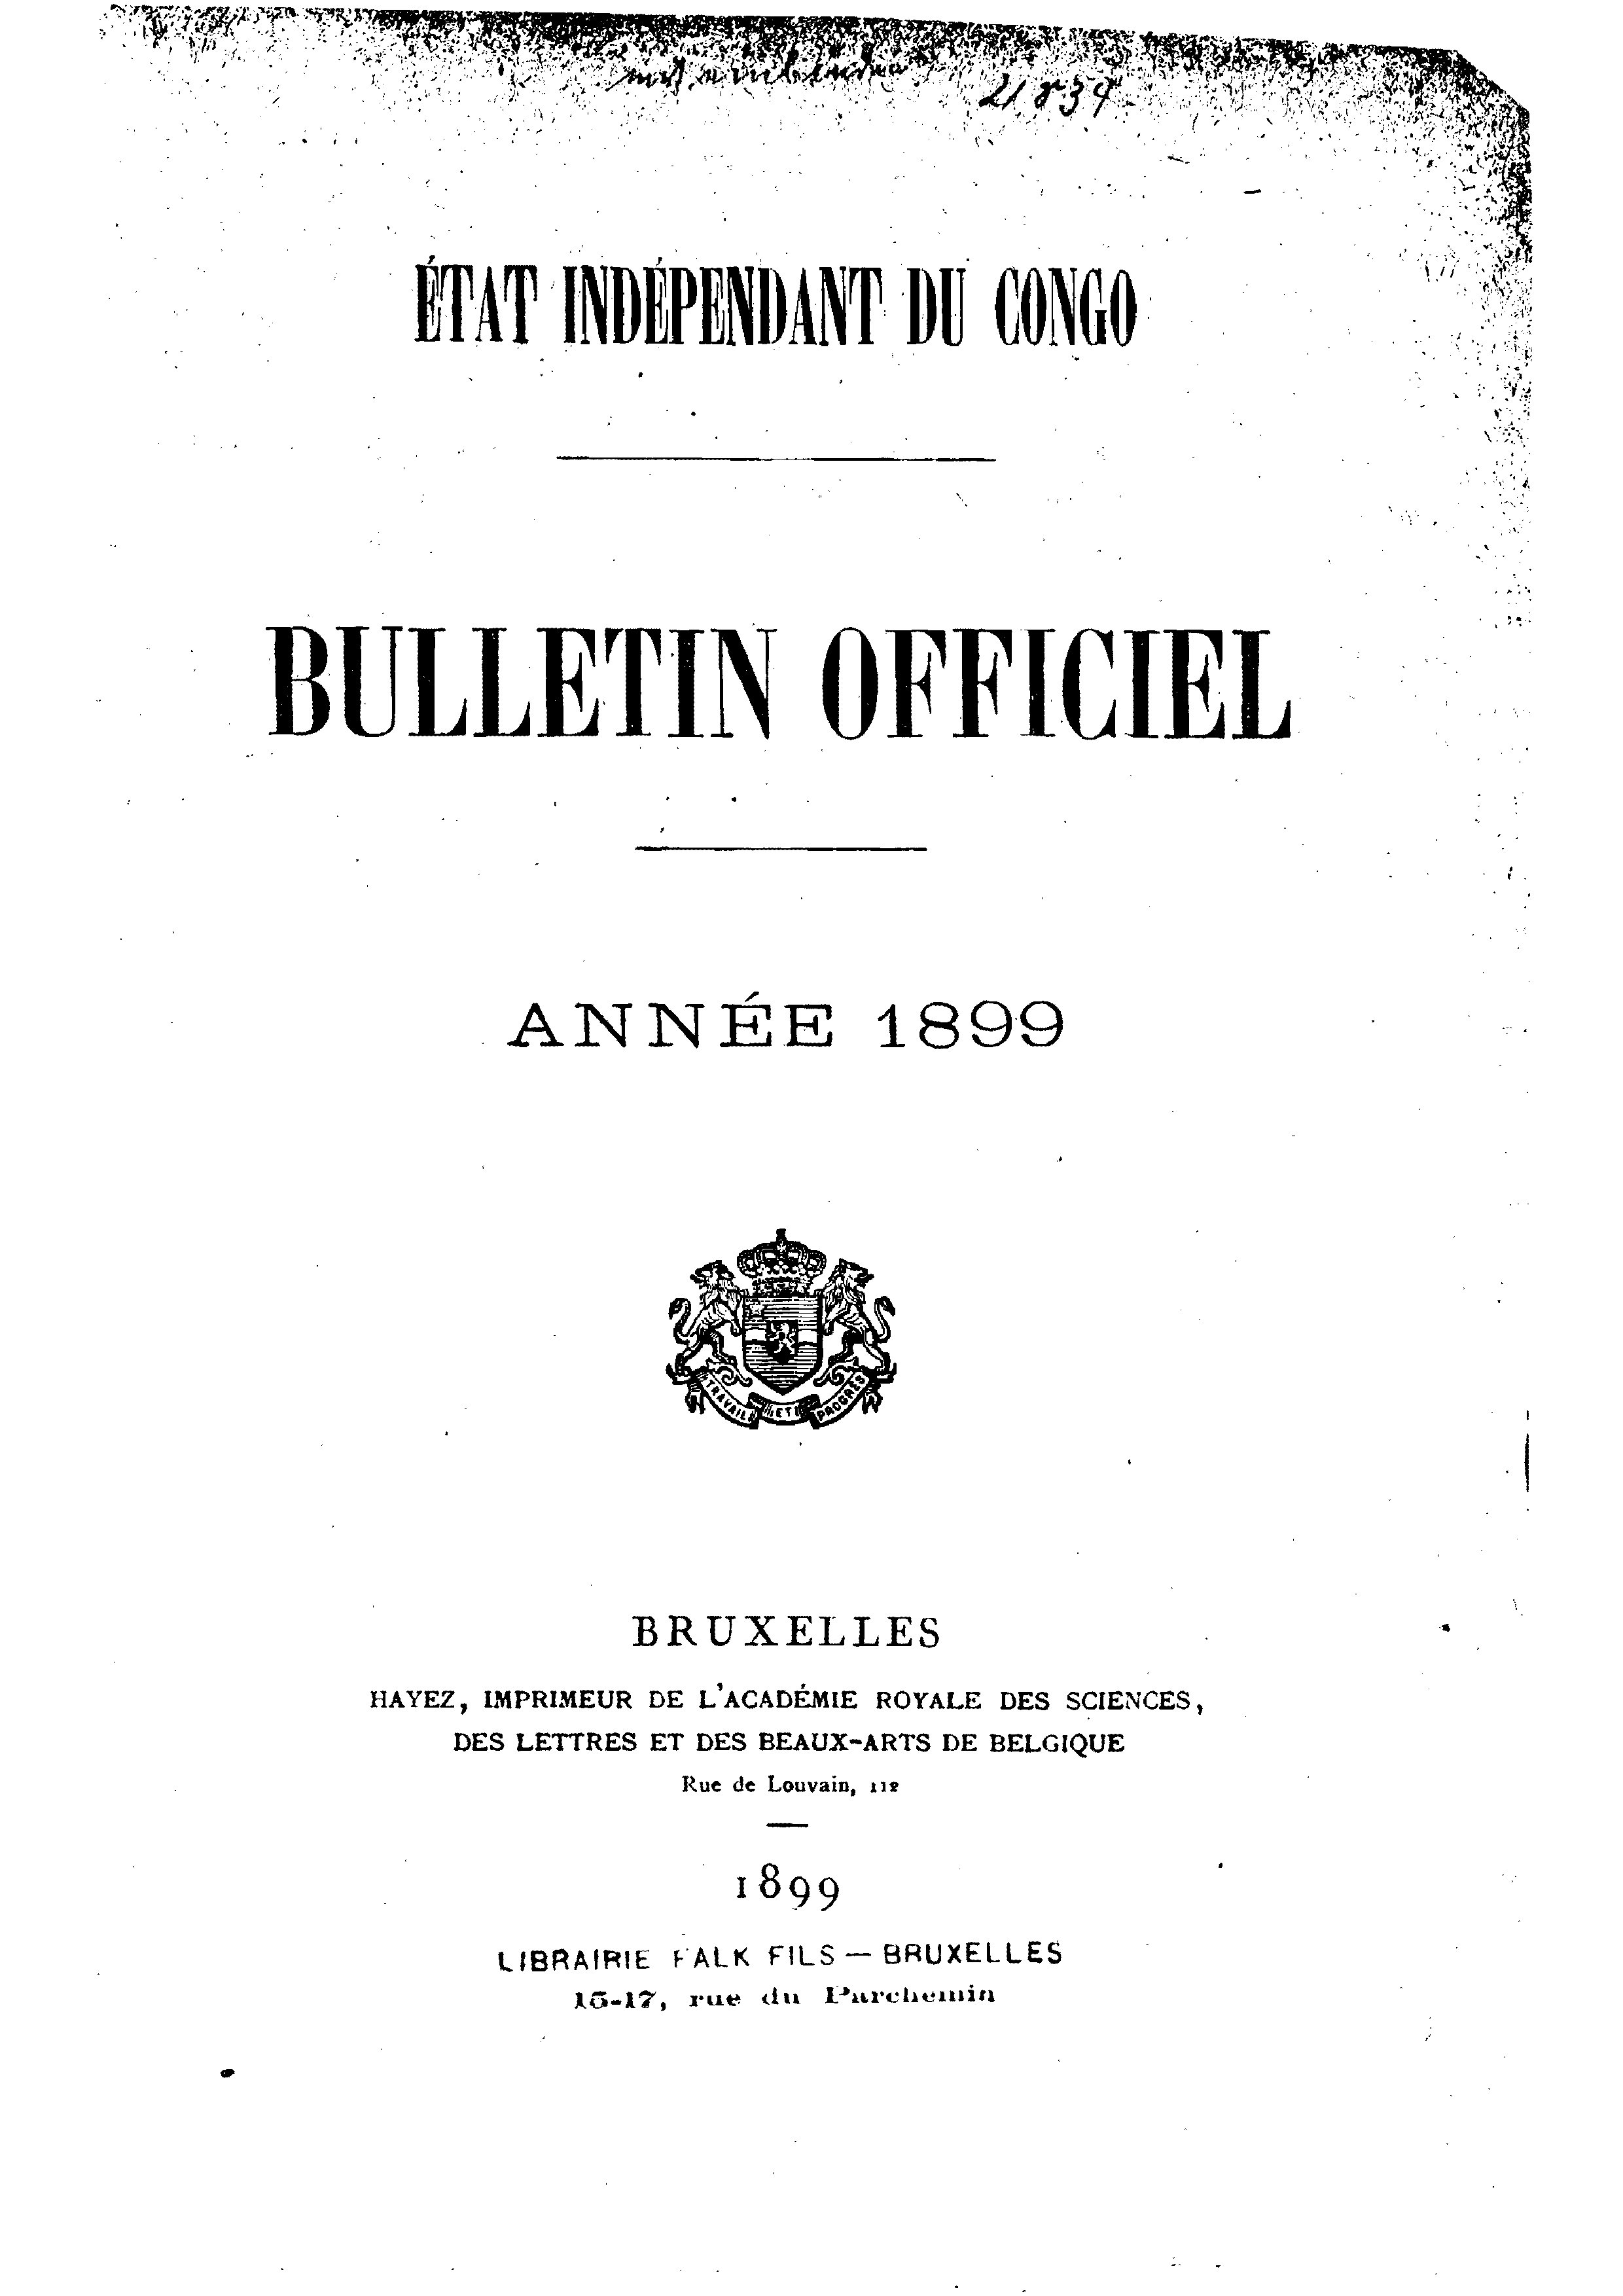 Book cover 202106132414: Etat Indépendant du Congo - roi Léopold II | Etat Indépendant du Congo - Bulletin Officiel – Année 1899